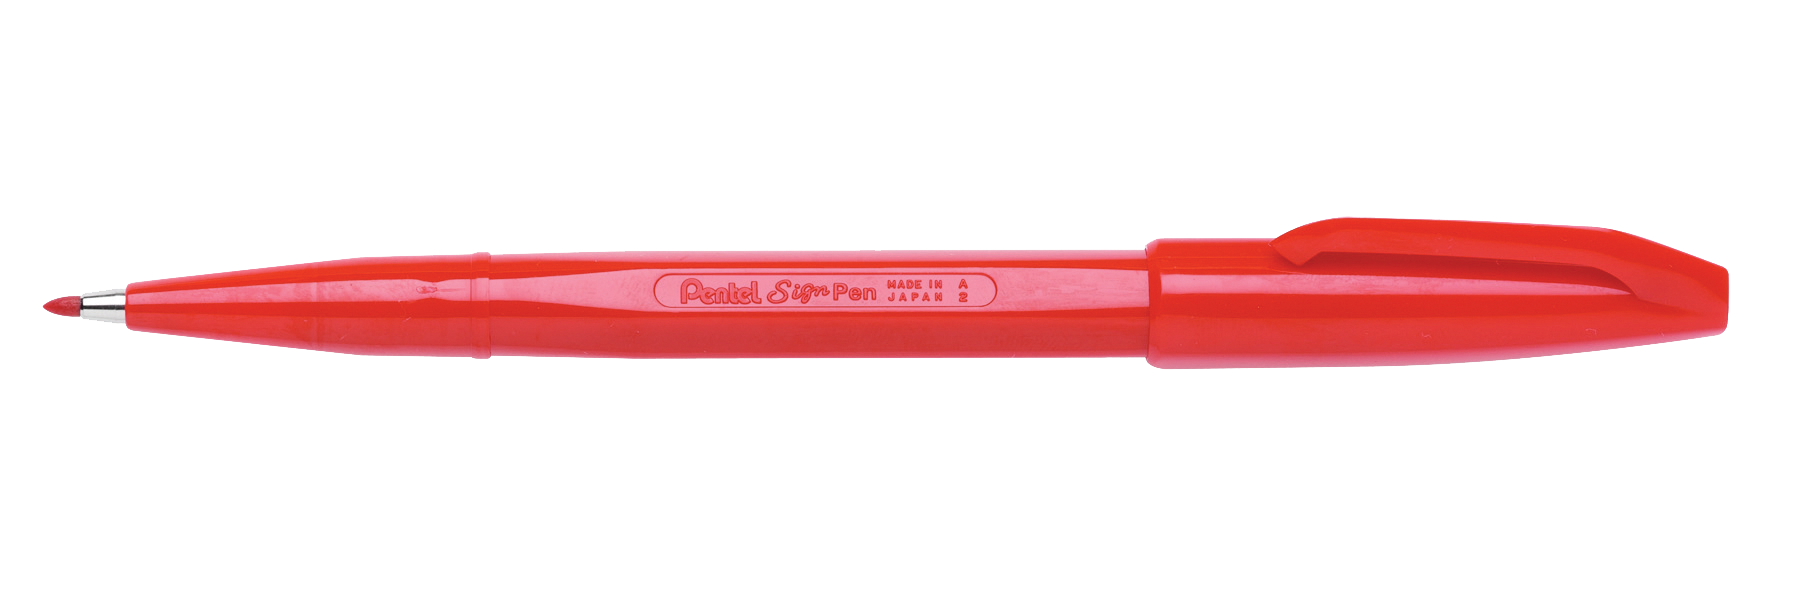 Faserschreiber Set Sign Pen